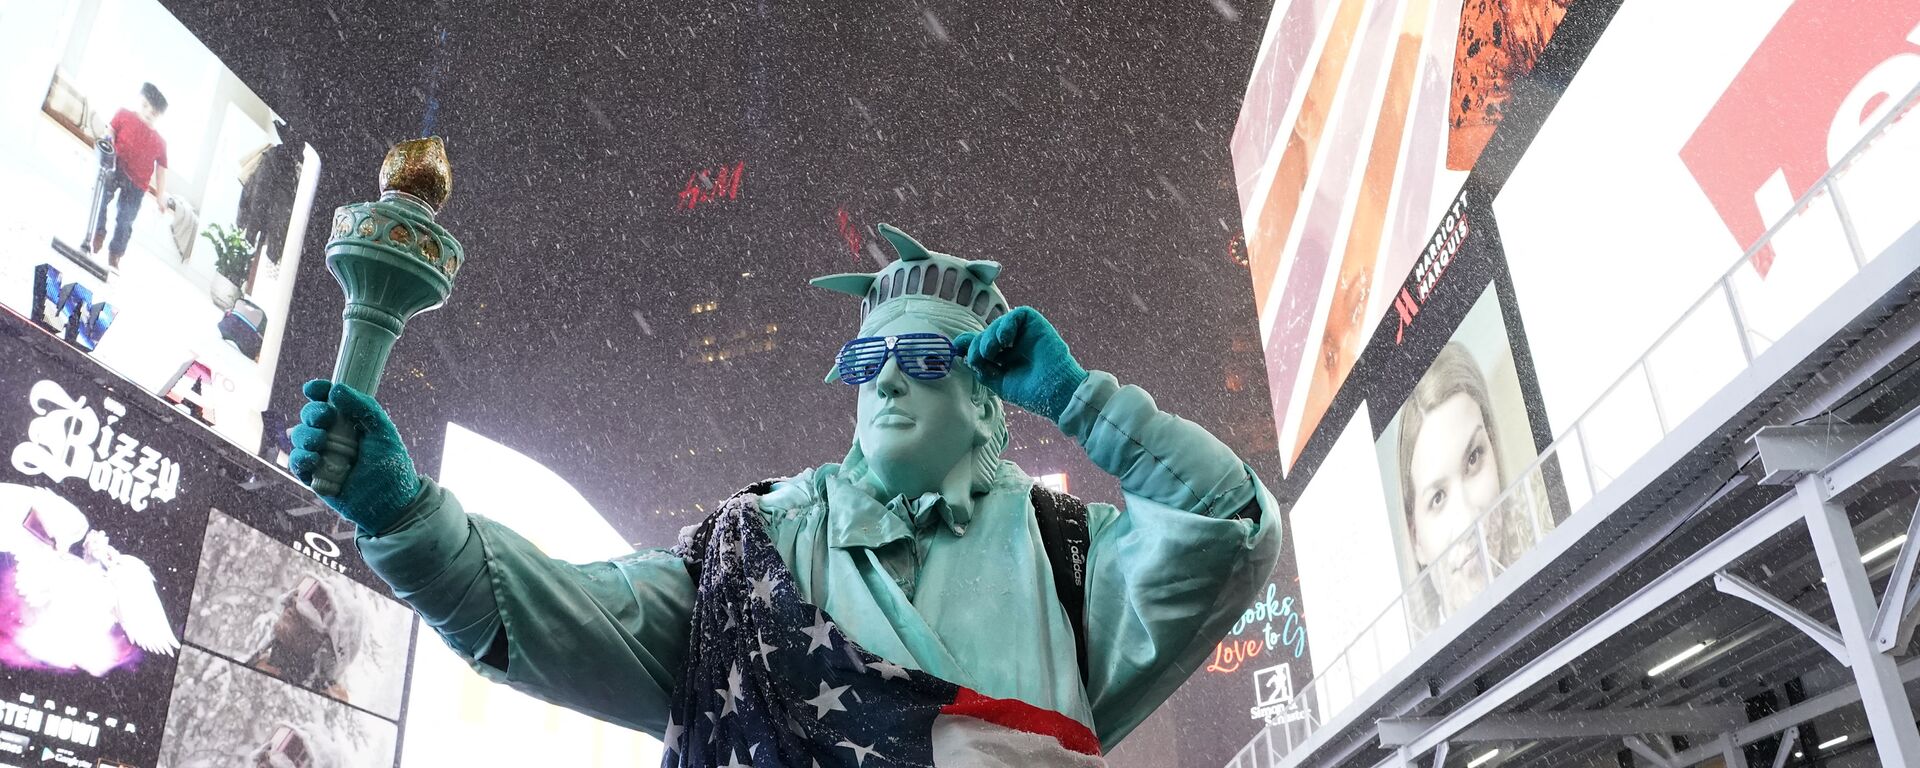 Человек в костюме Статуи Свободы на Таймс-сквер в Нью-Йорке - Sputnik Узбекистан, 1920, 05.03.2021